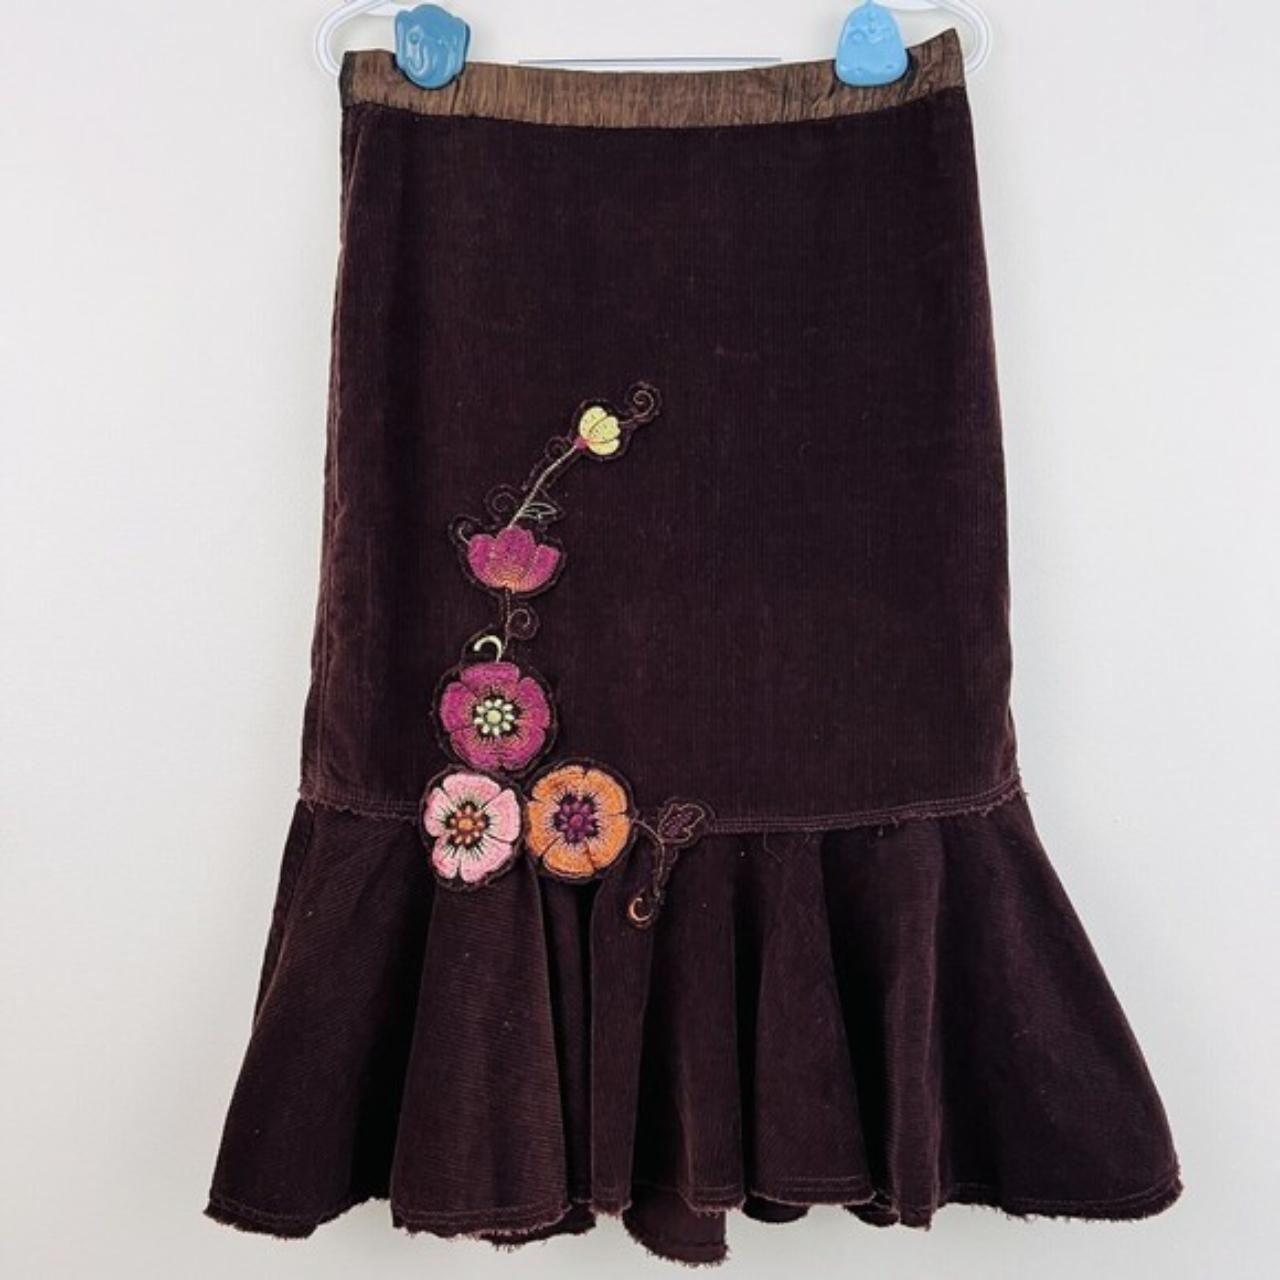 Free People Women's Brown Skirt | Depop